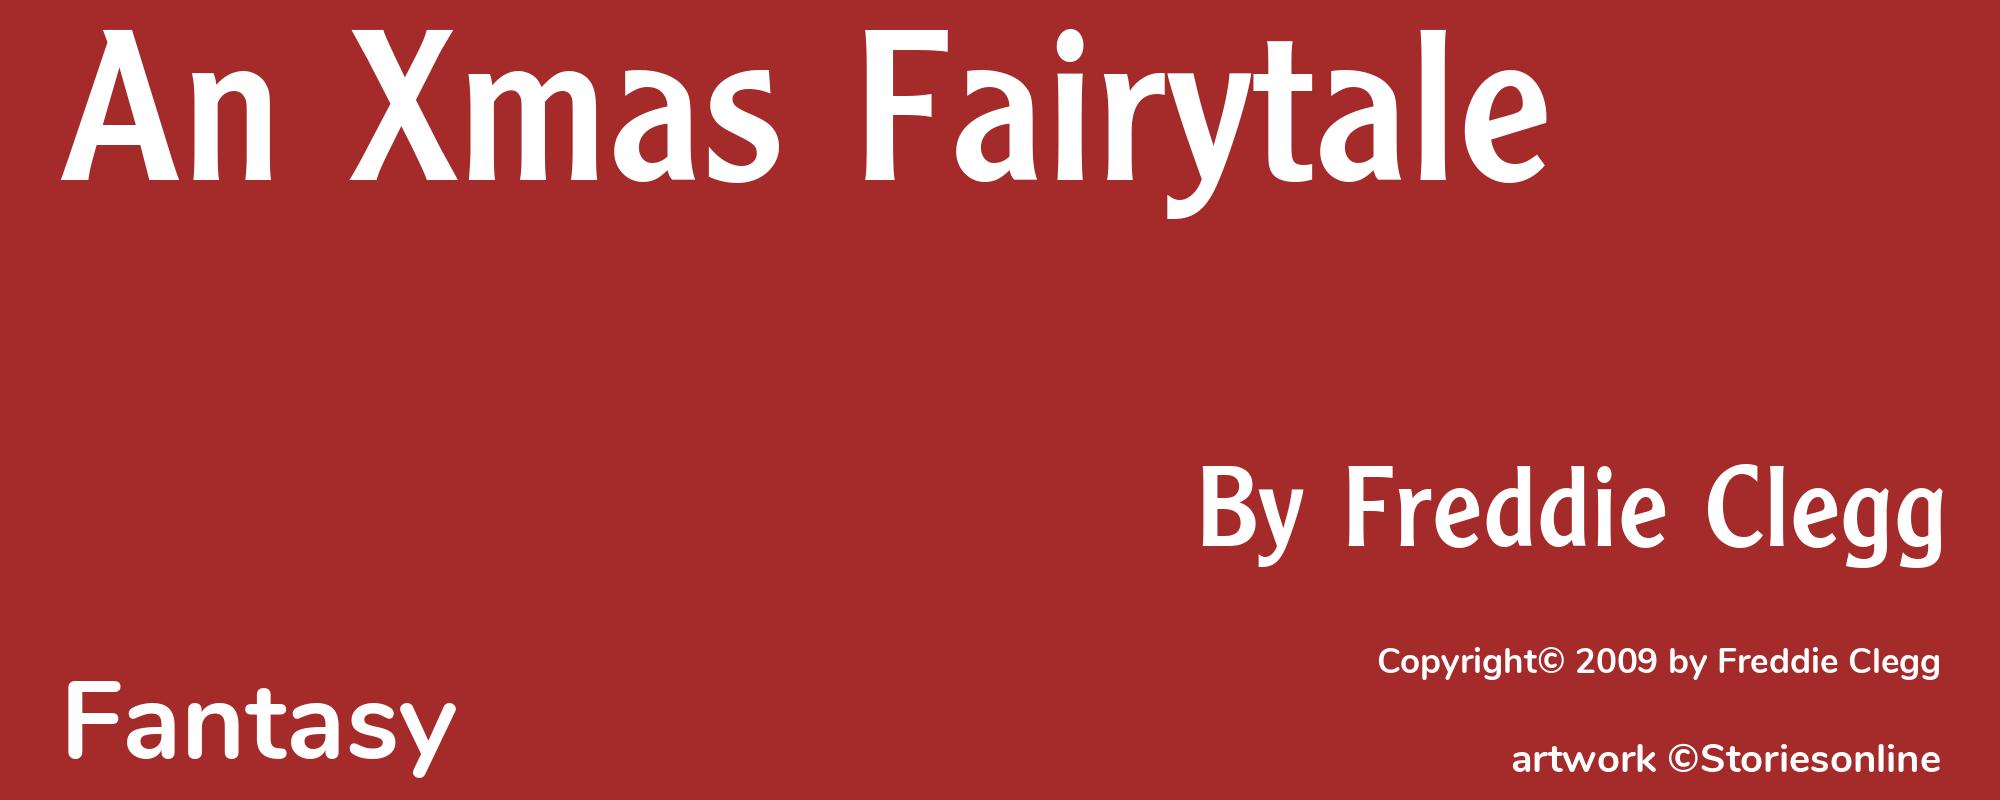 An Xmas Fairytale - Cover